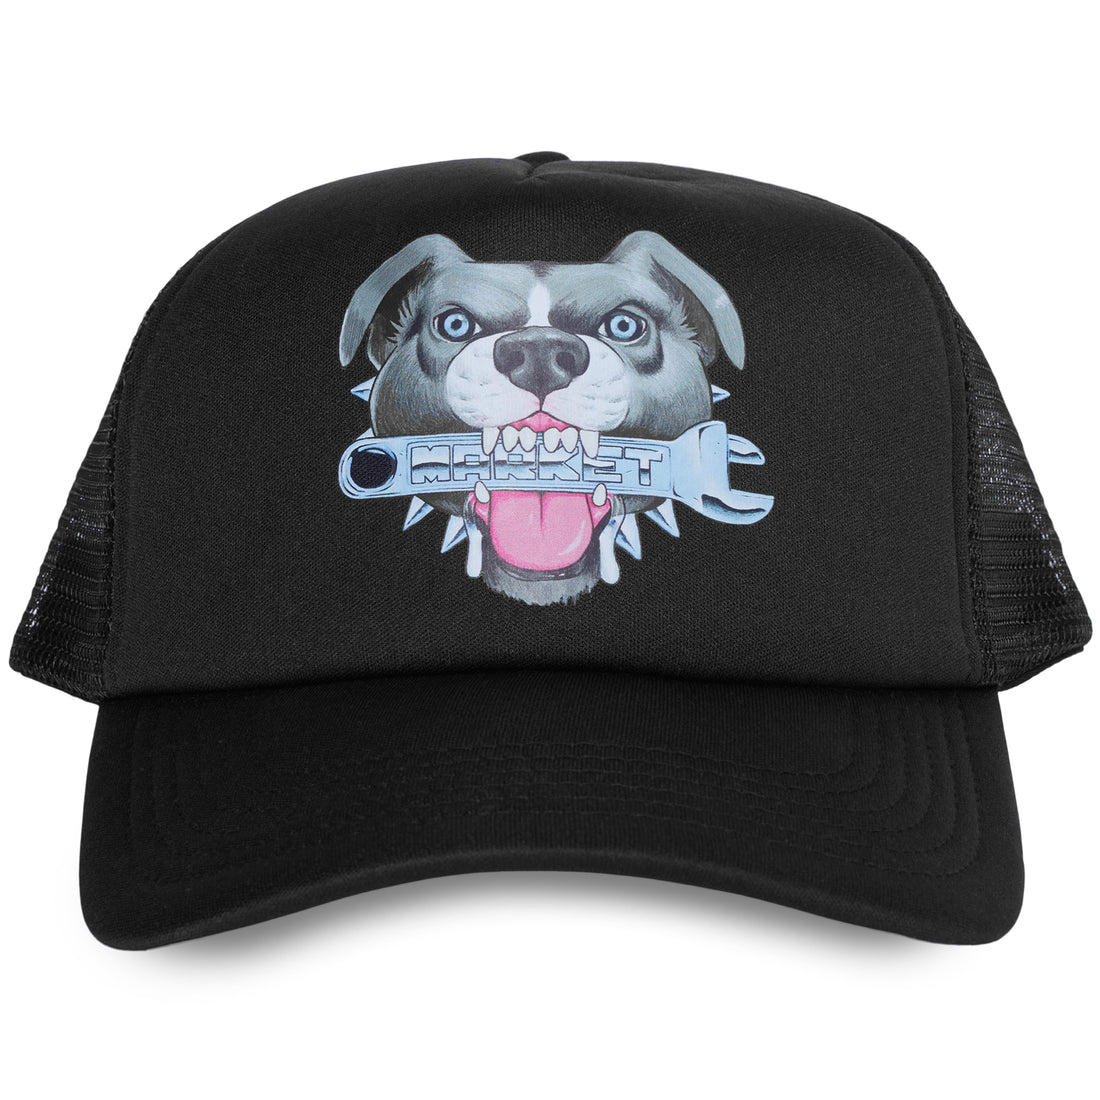 chinatownmarket junkyard dog trucker hat